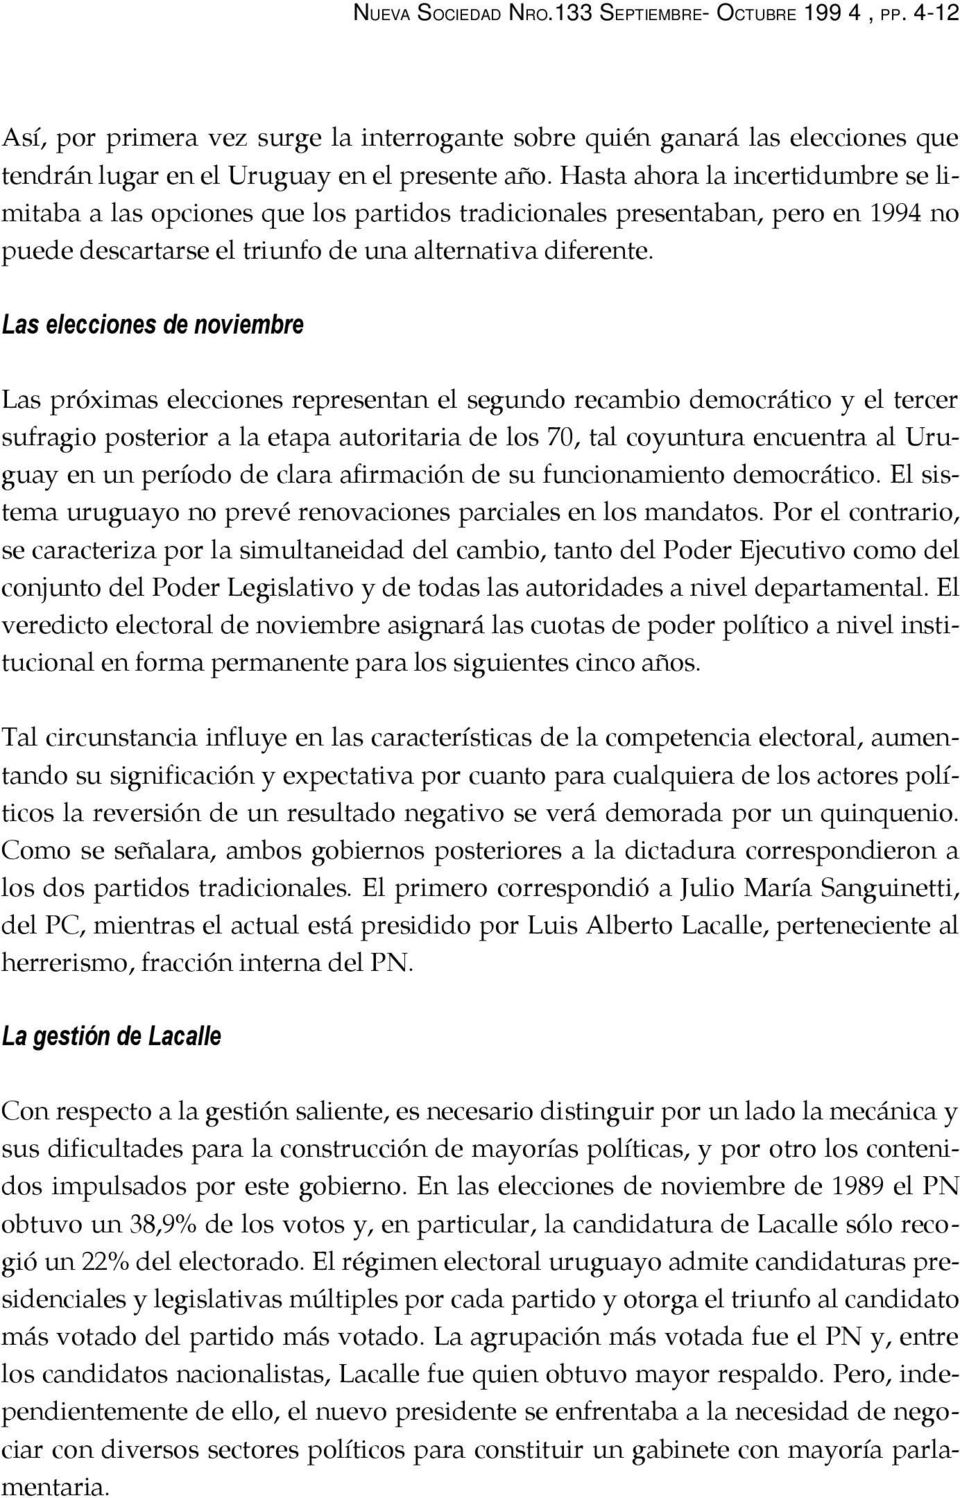 Las elecciones de noviembre Las próximas elecciones representan el segundo recambio democrático y el tercer sufragio posterior a la etapa autoritaria de los 70, tal coyuntura encuentra al Uruguay en